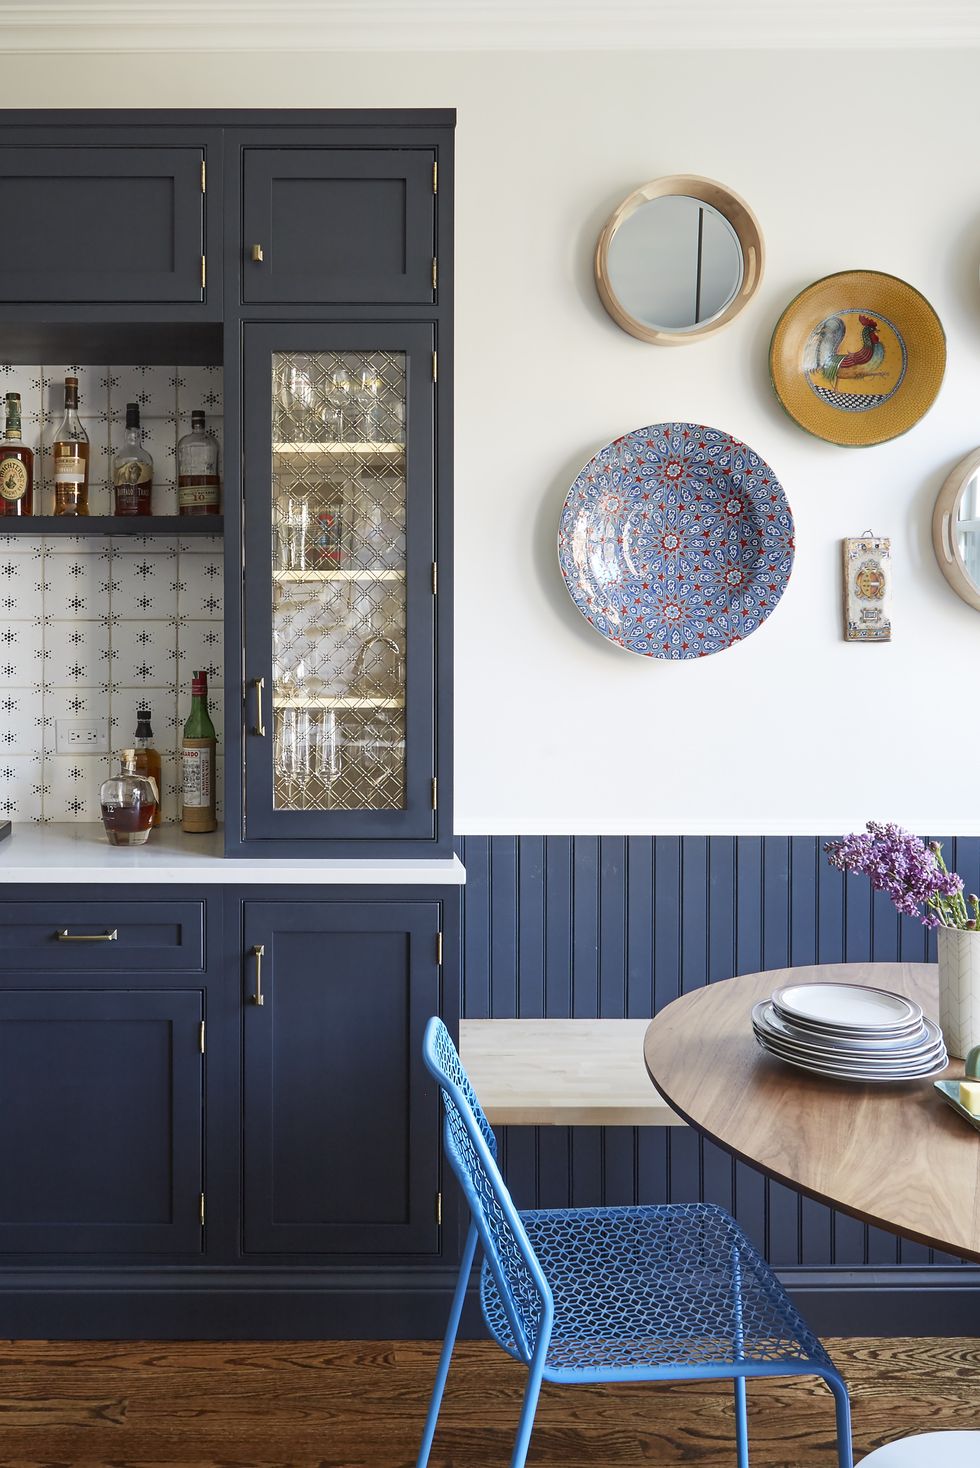 NTK nội thất đã lựa chọn tone màu xanh xám đậm cho tủ bếp và gỗ ốp tường, ghế ngồi màu xanh lam nhạt cùng những chi tiết như đĩa trang trí trên tường cho bếp nhỏ kết hợp khu vực ăn uống quyến rũ.